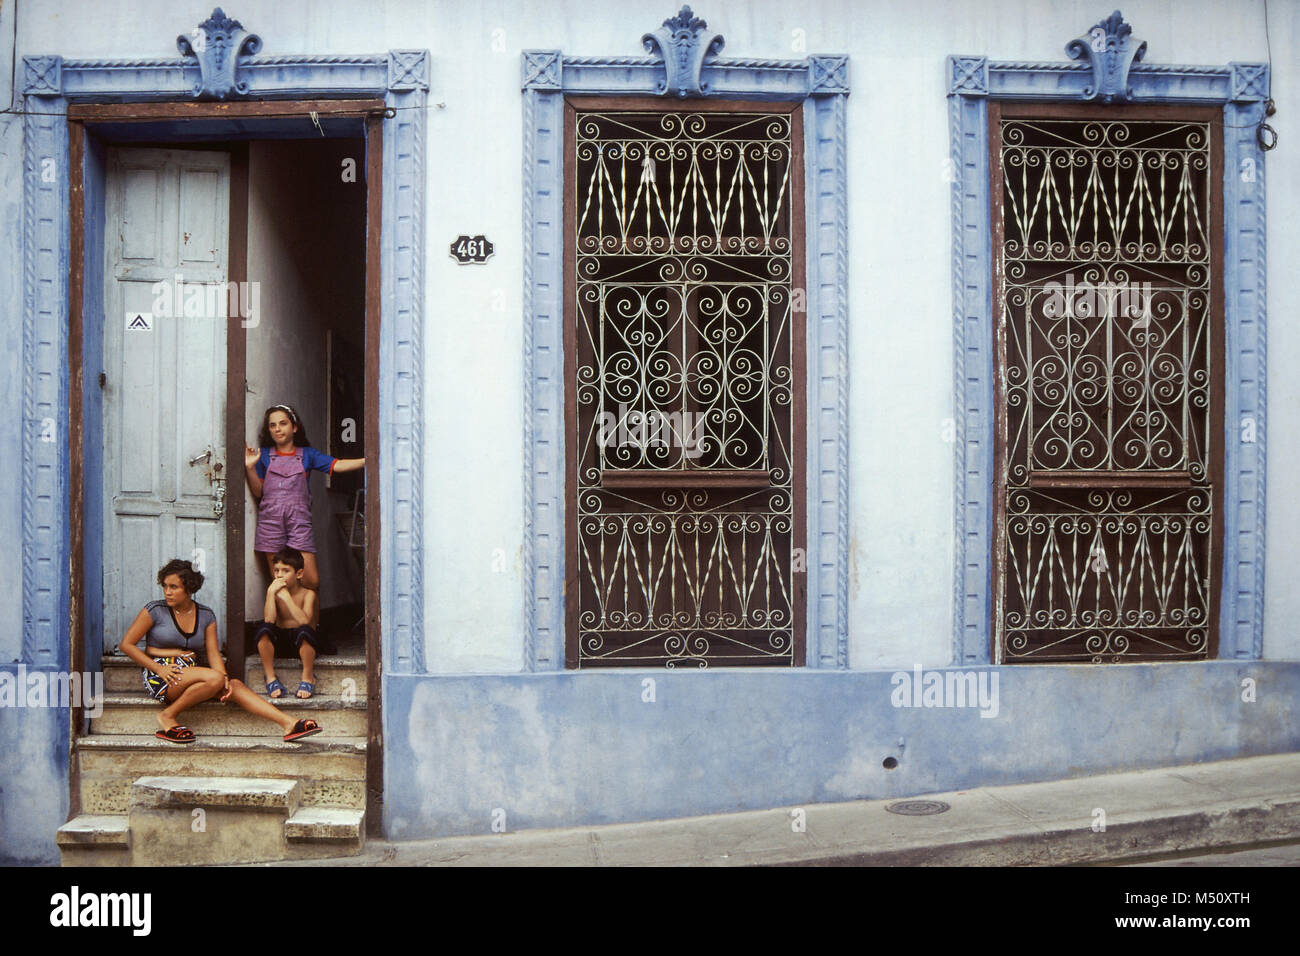 Vista frontale della madre locali e posti a sedere per bambini sui gradini della loro casa nella piccola città coloniale di Trinidad, Cuba Foto Stock